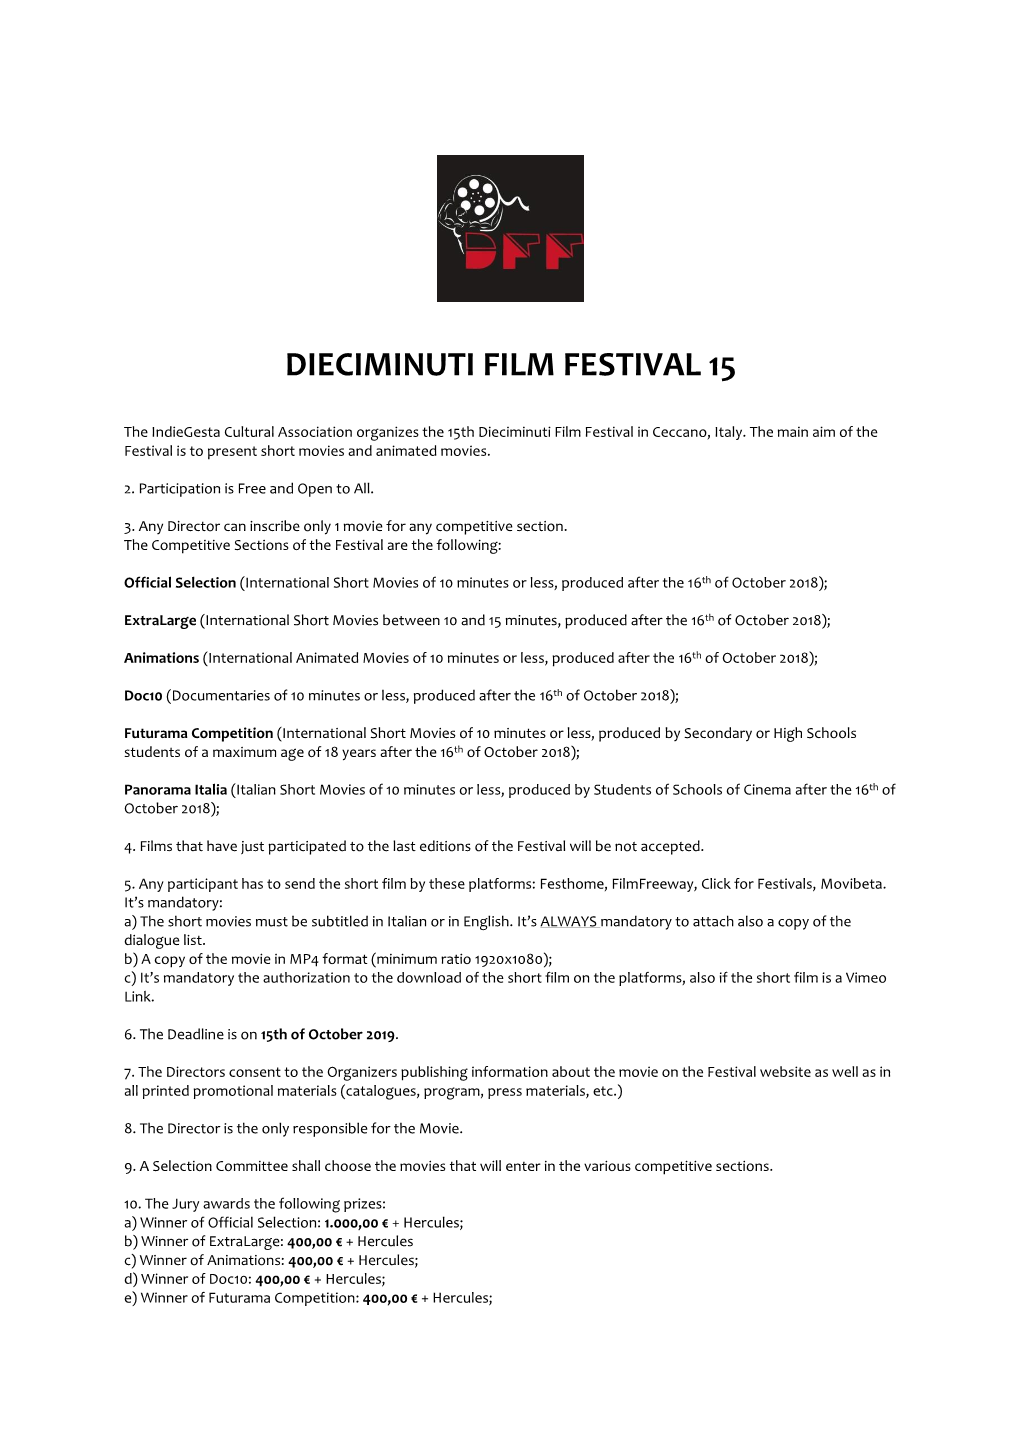 Dieciminuti Film Festival 15